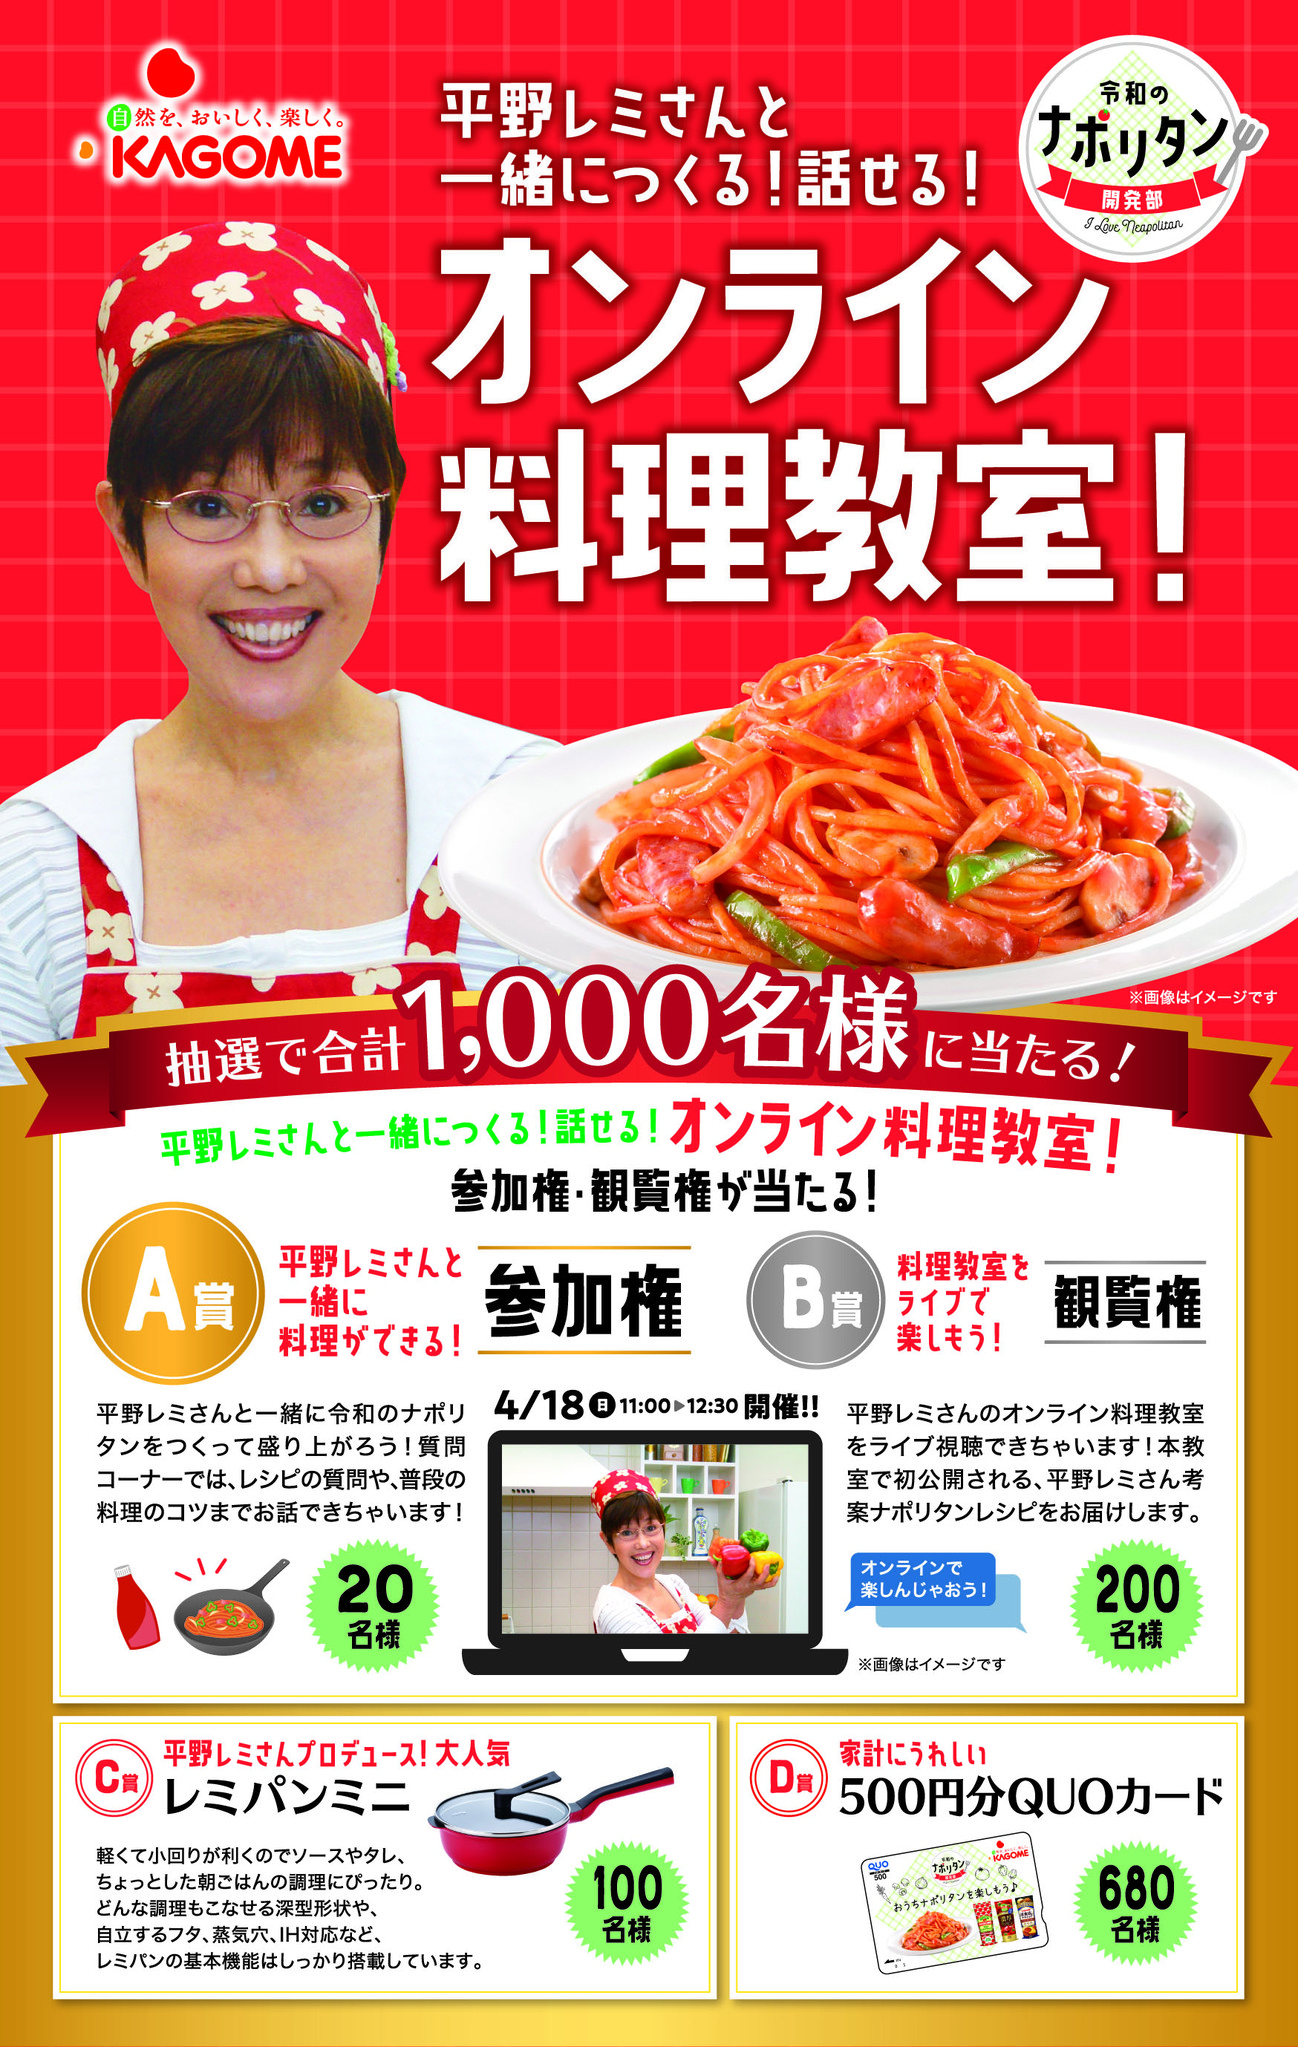 平野レミ さんと 令和のナポリタン を一緒につくれるオンライン料理教室が当たる おうちでナポリタンキャンペーン がスタート カゴメ株式会社のプレスリリース